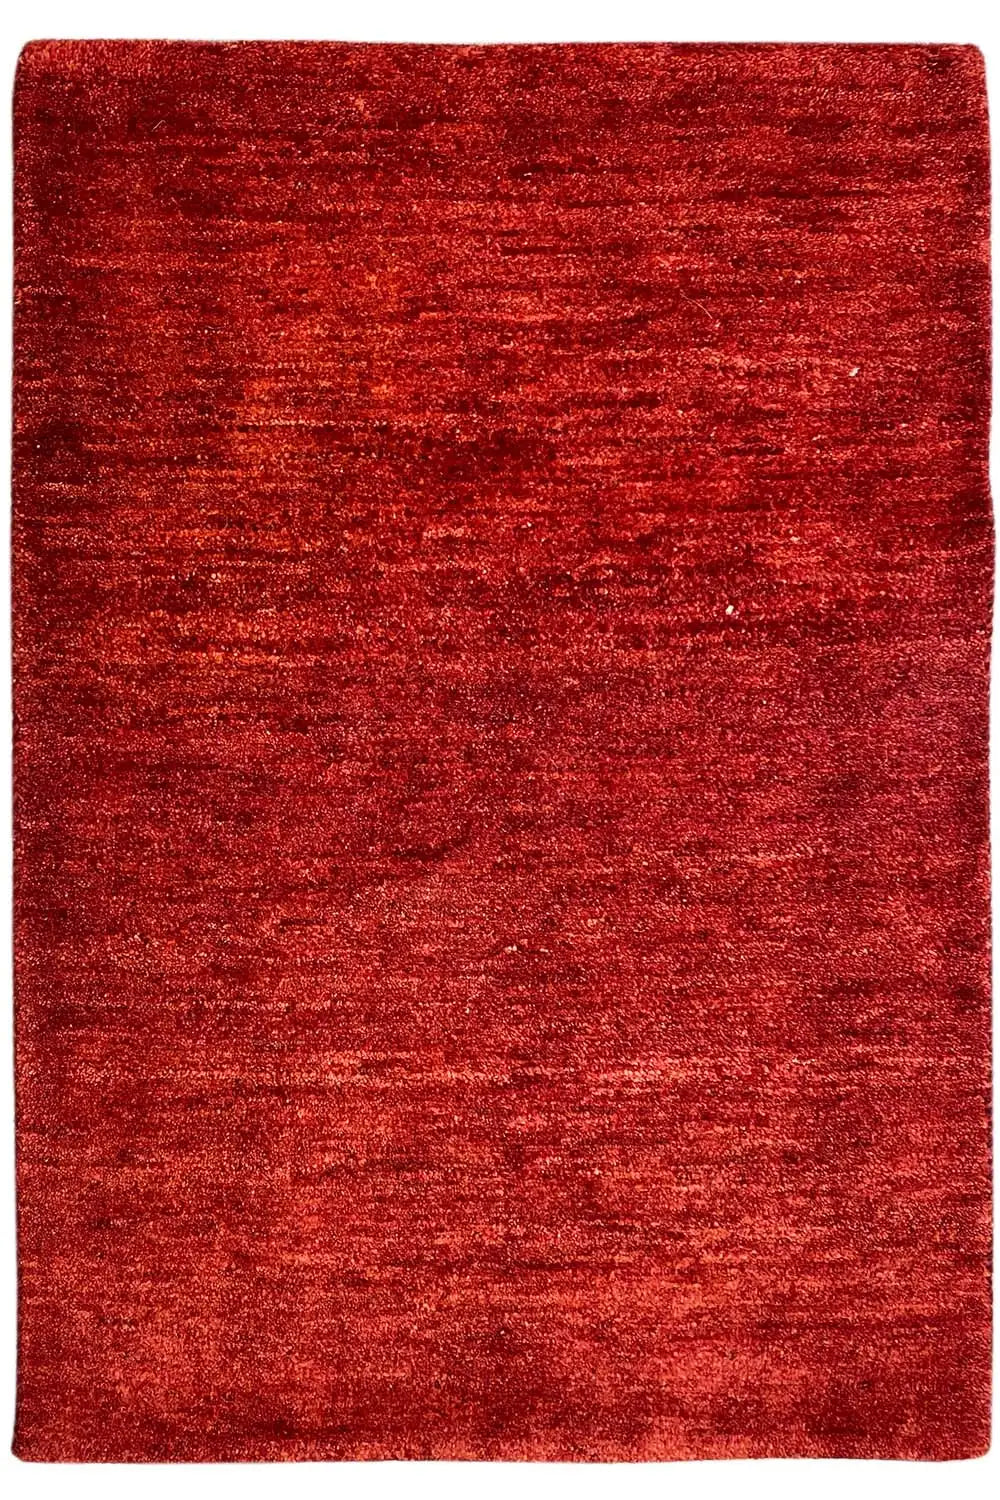 Gabbeh - (110x73cm) - German Carpet Shop